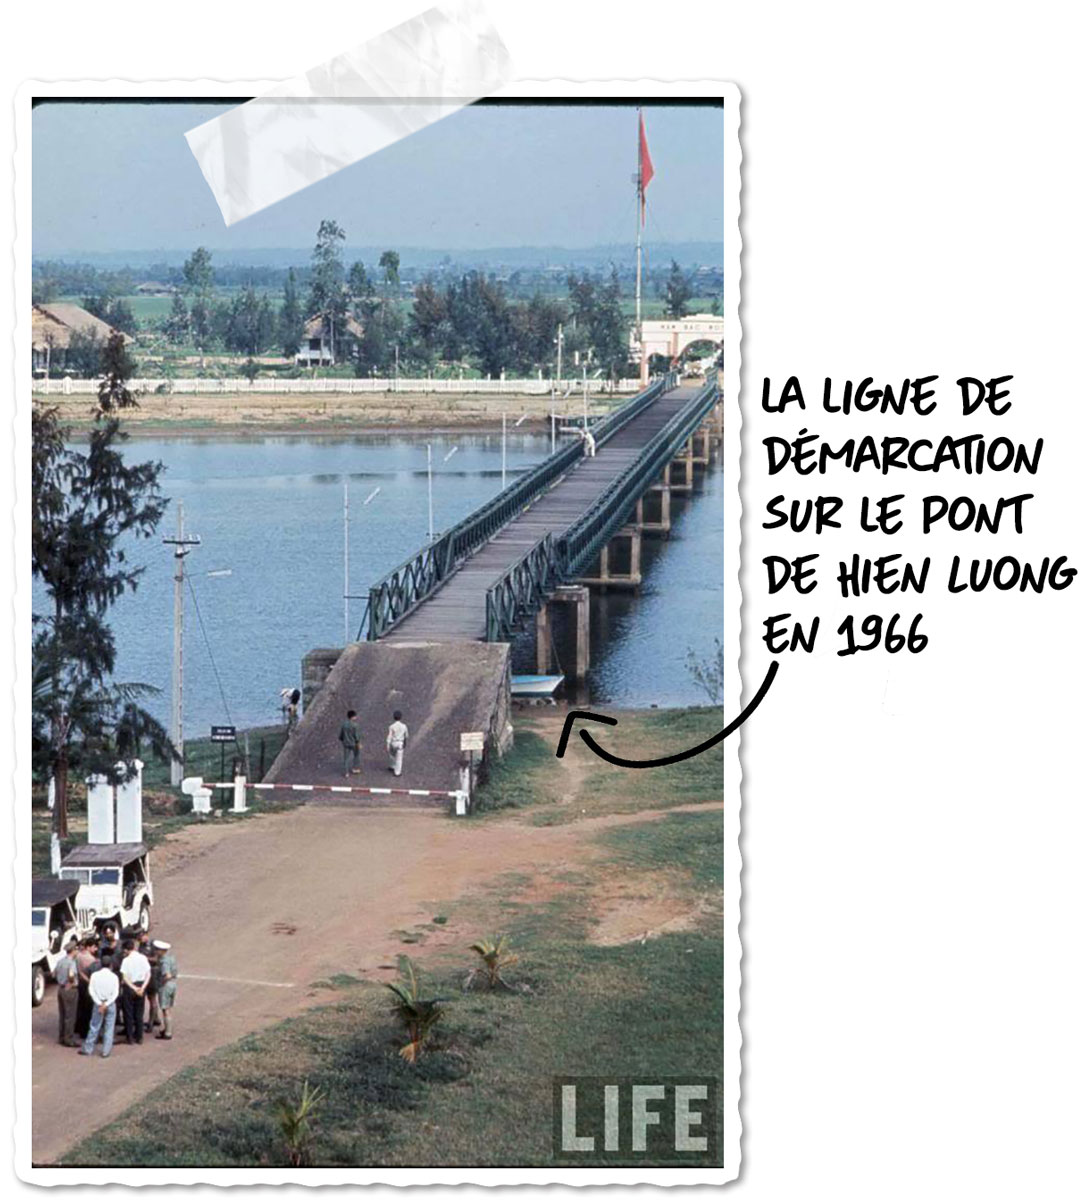 La zone démilitarisée et le pont Hien Luong